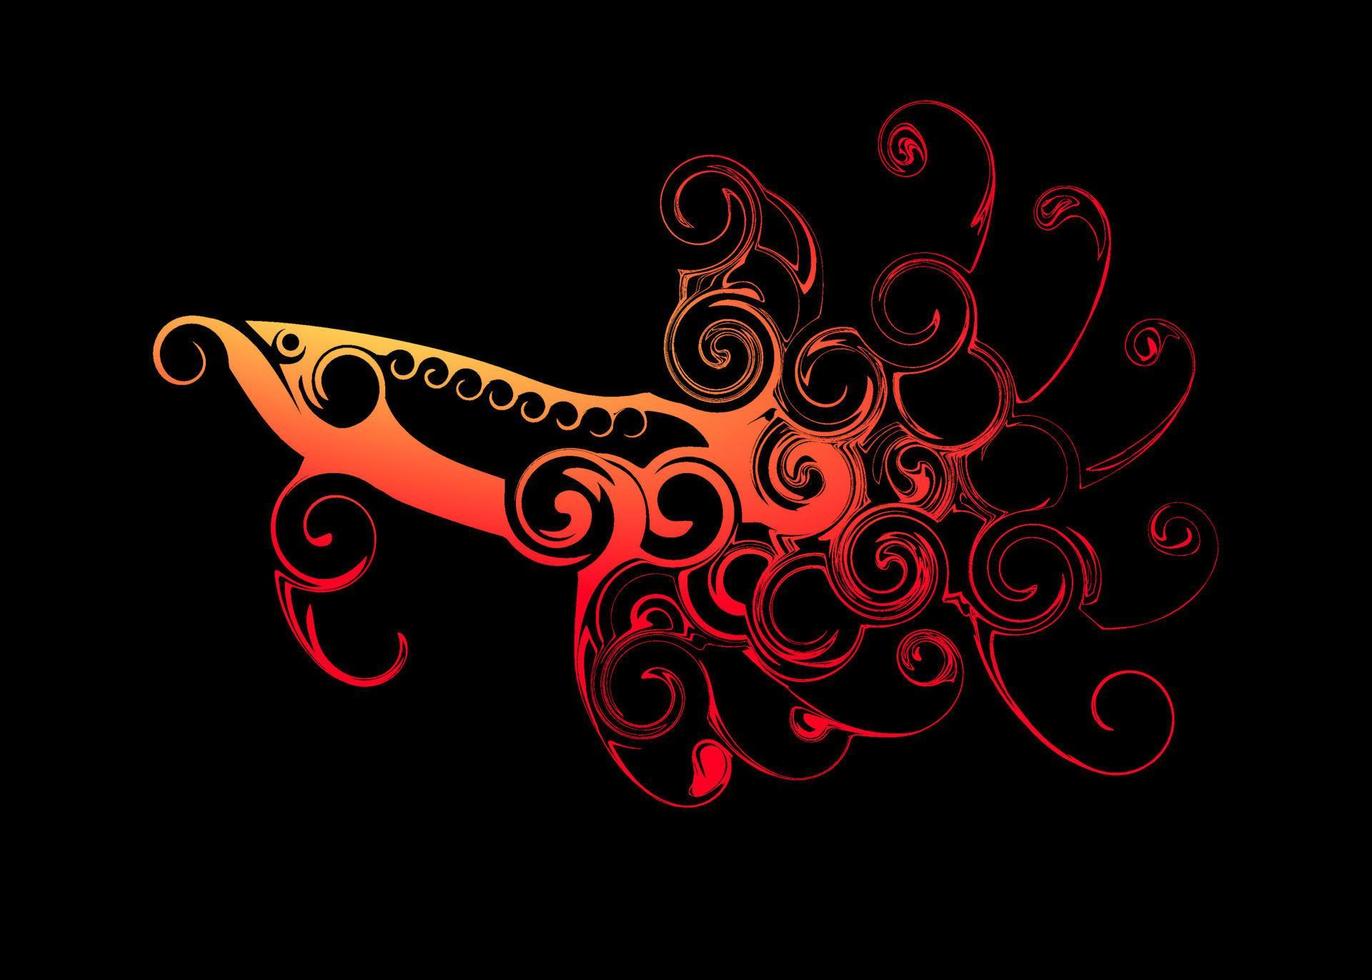 beau poisson arowana super rouge abstrait ou silhouette de poisson dragon fond d'écran vecteur